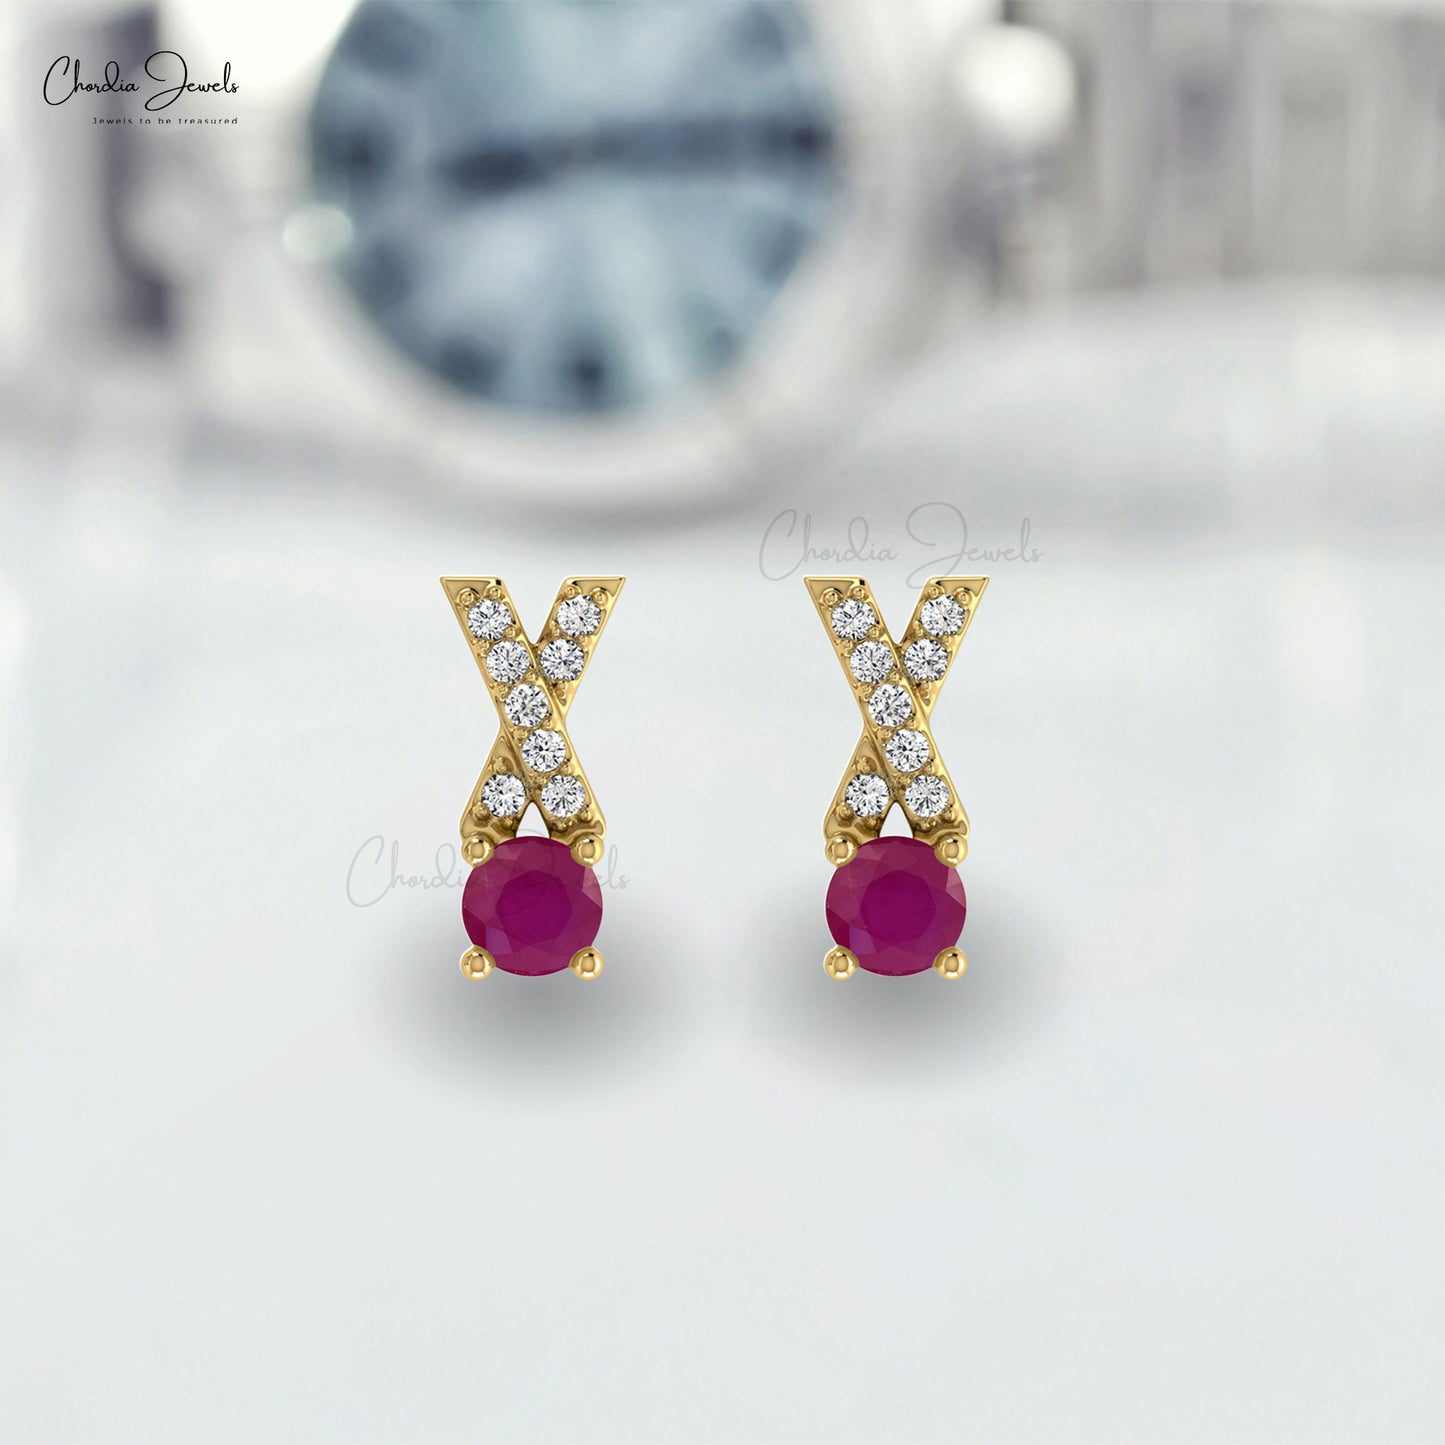 July Birthstone Ruby Criss Cross Earrings with Diamond in 14K Gold